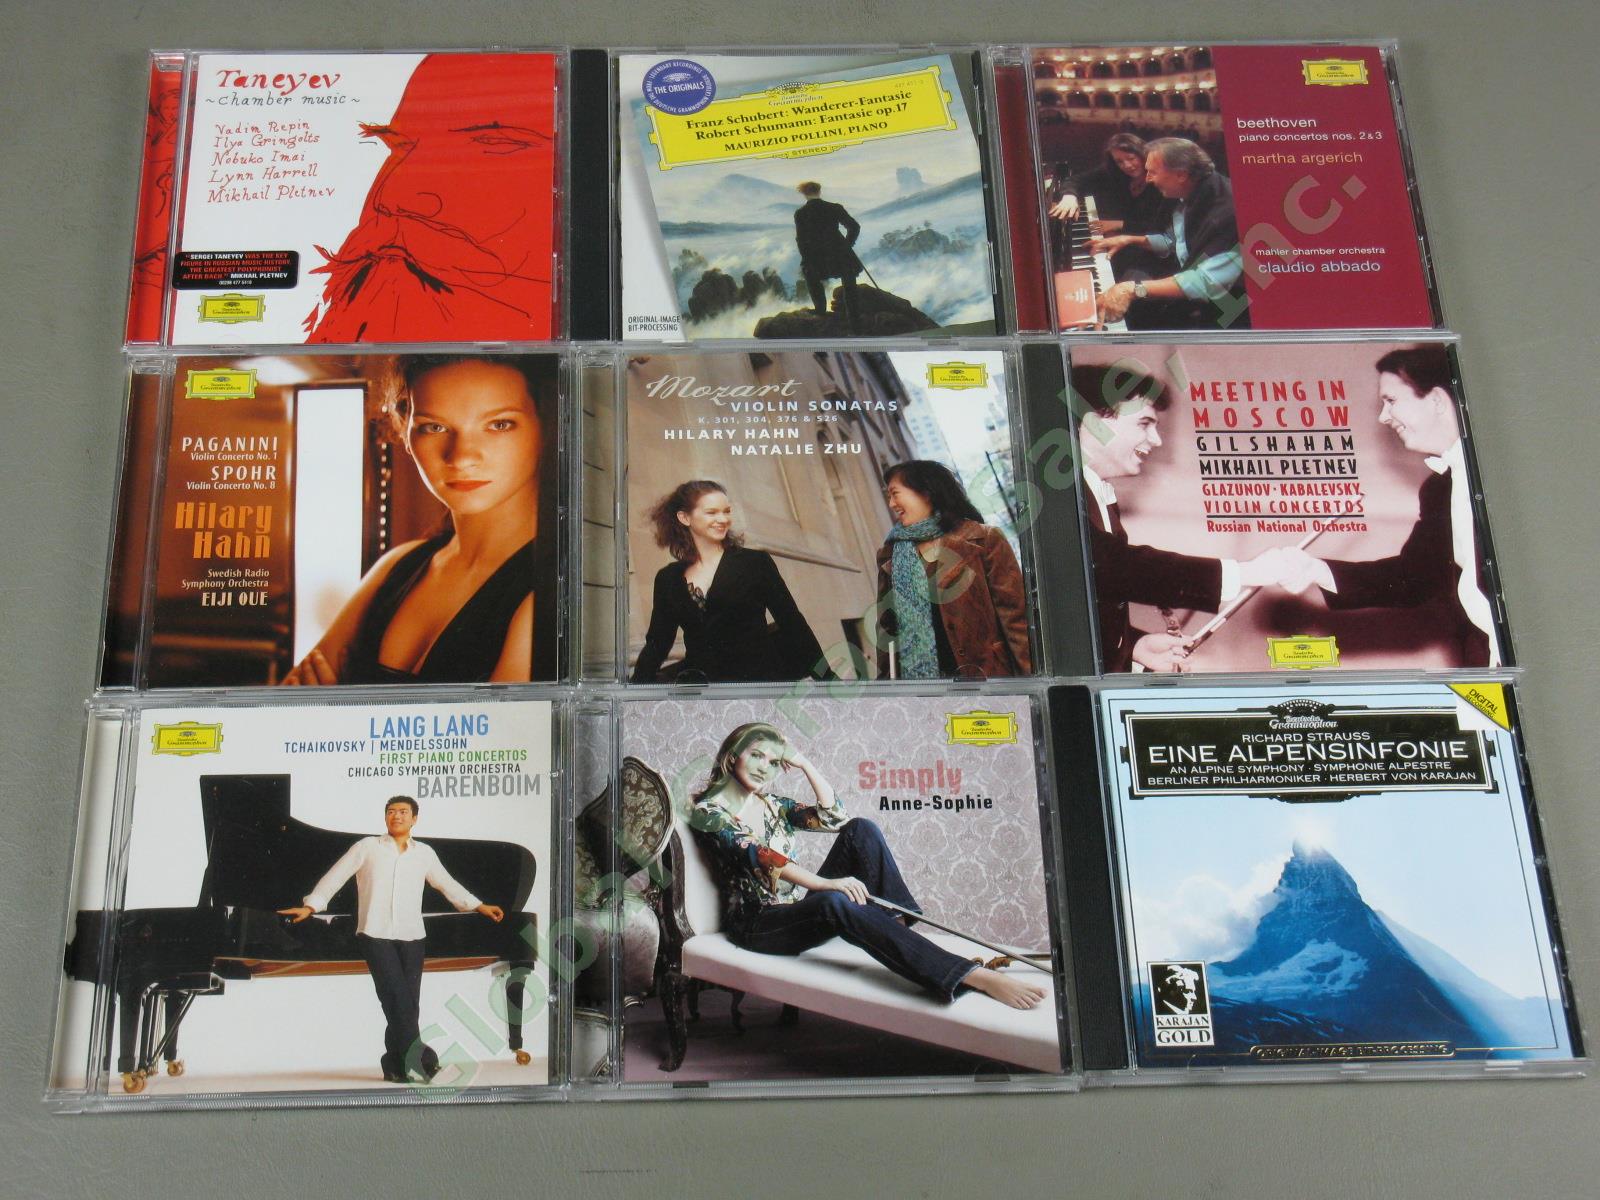 Huge Deutsche Grammophon Classical Music 45 CD Lot Brahms Mozart Liszt Dvorak NR 6